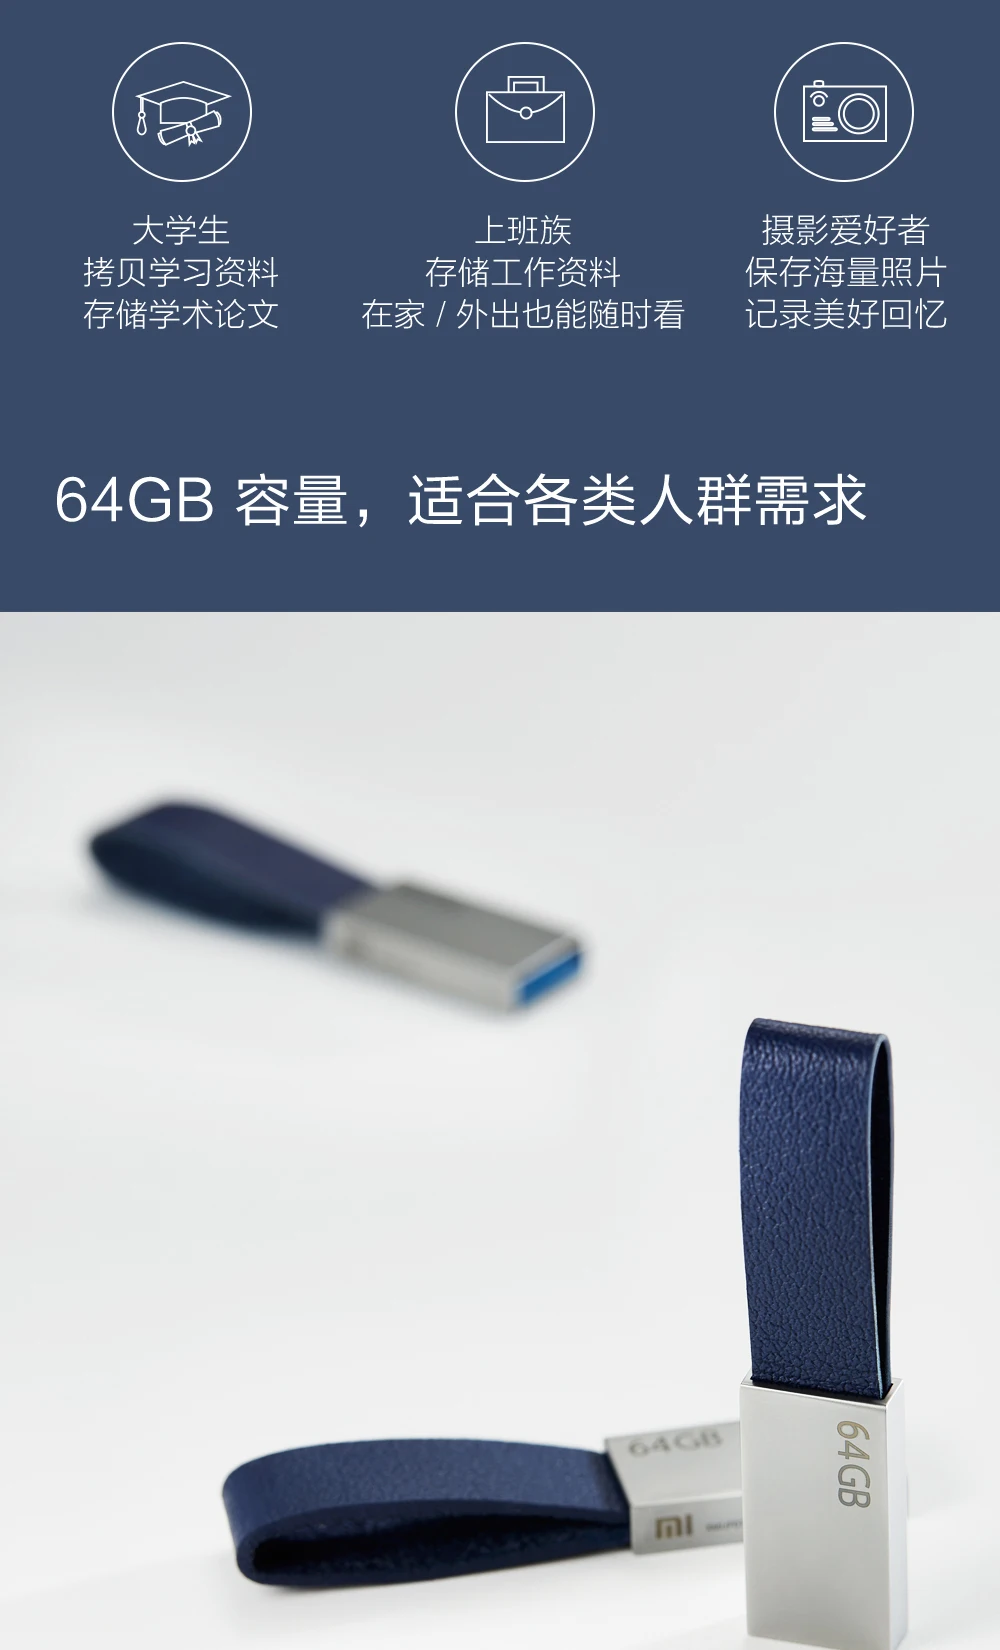 Xiaomi Mijia U диск 64 Гб USB 3,0 Высокоскоростная передача металлический корпус Компактный размер переносной ремешок дизайн для умного дома